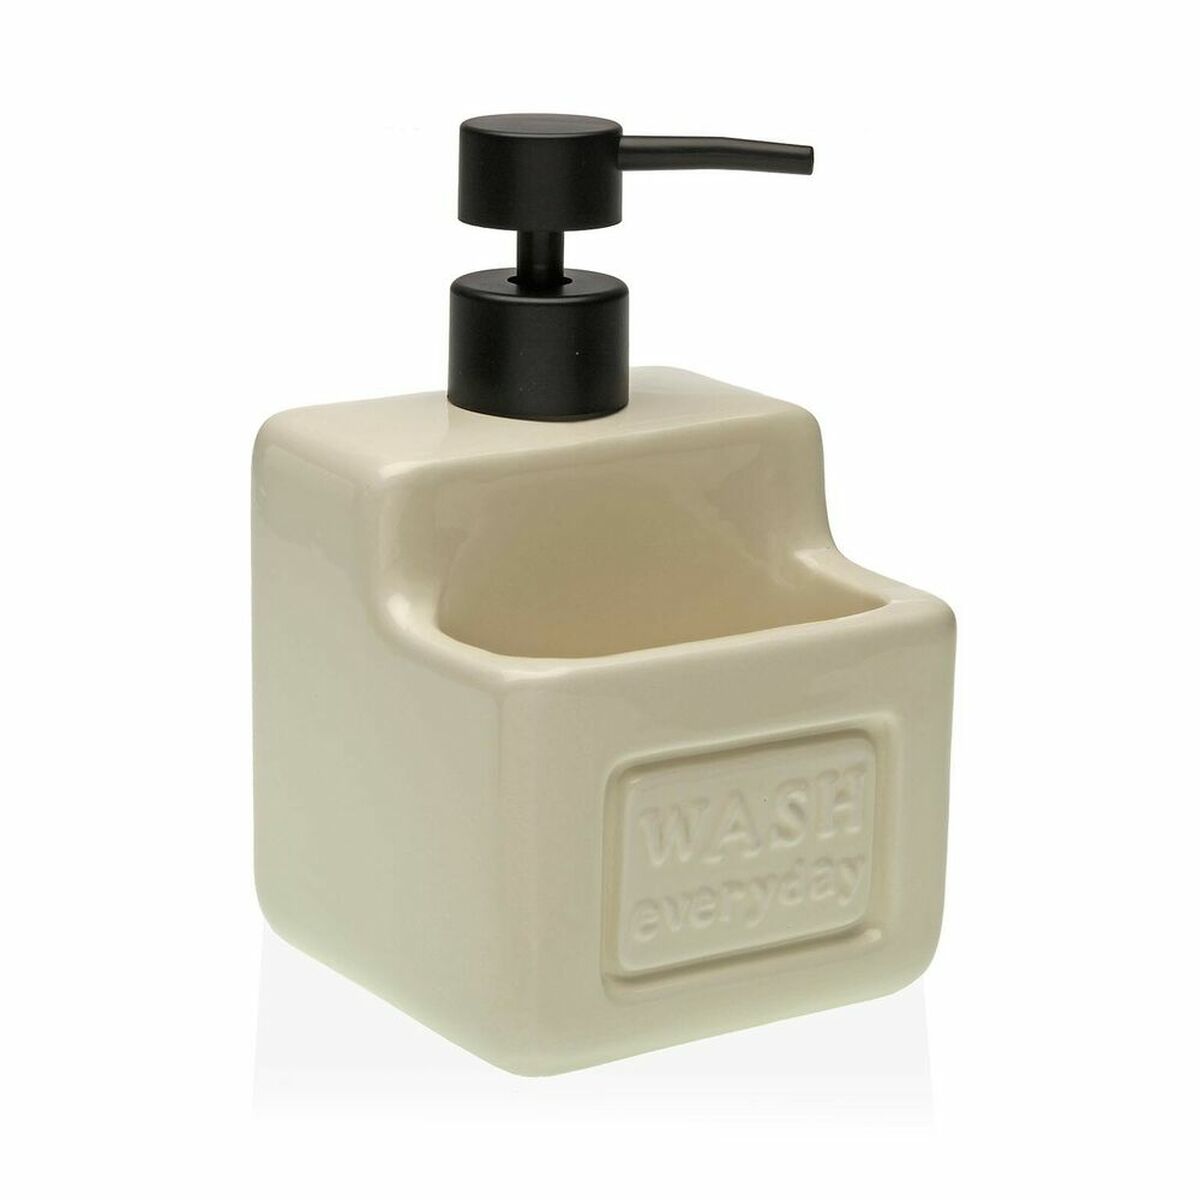 2-in-1 Soap Dispenser for the Kitchen Sink Versa Beige Ceramic ABS (10 x 19 x 10 cm)